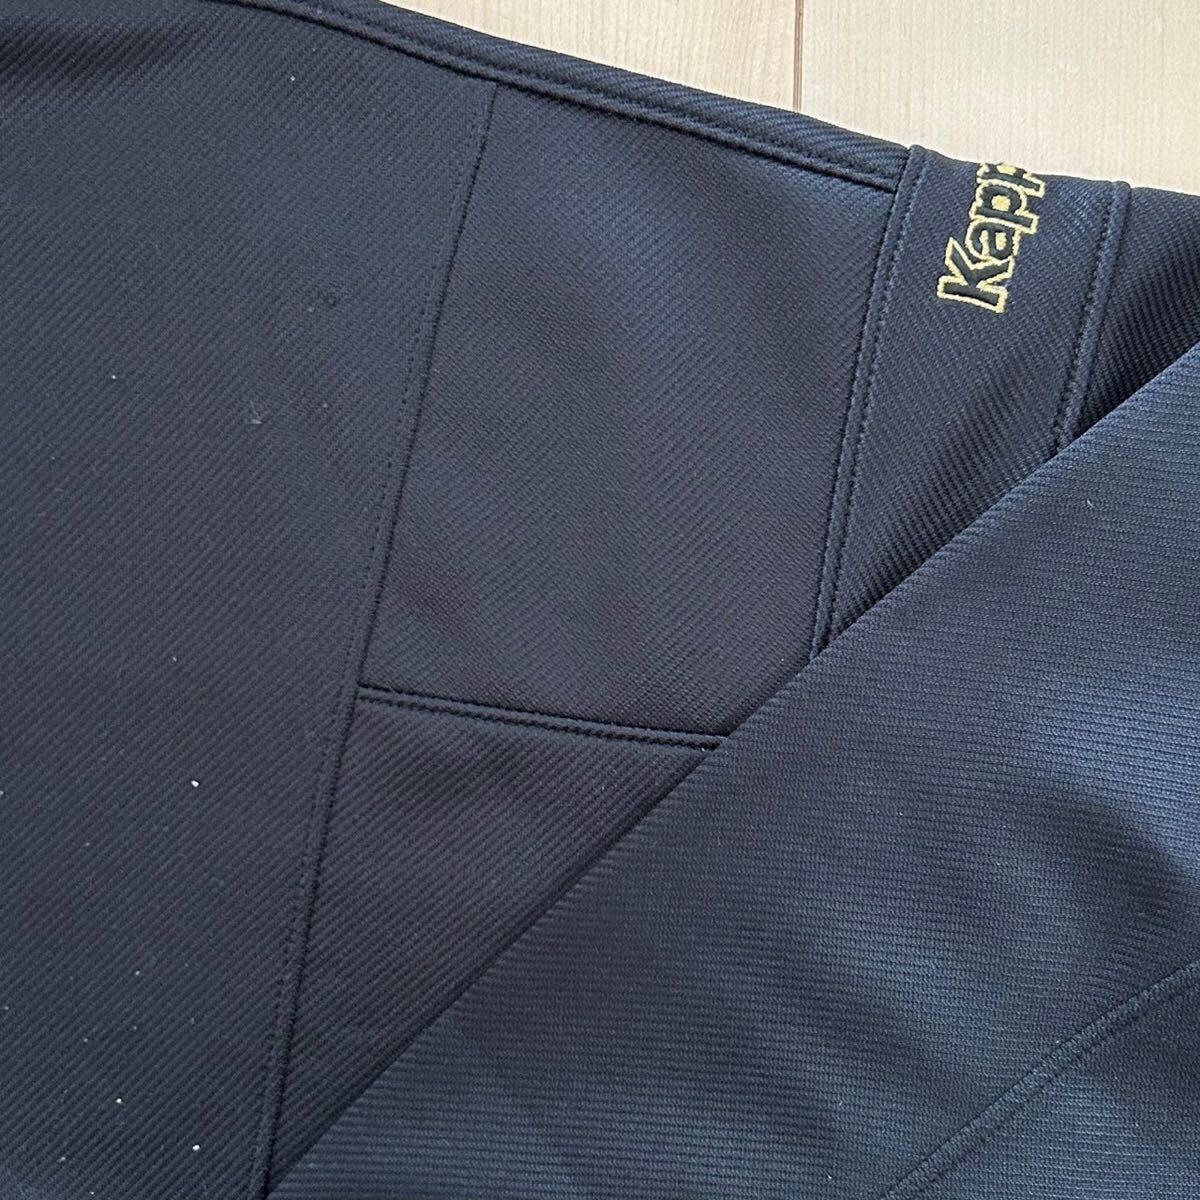 90s Kappa Kappa спортивная куртка retro джерси черный мужской M размер соответствует Vintage б/у одежда 